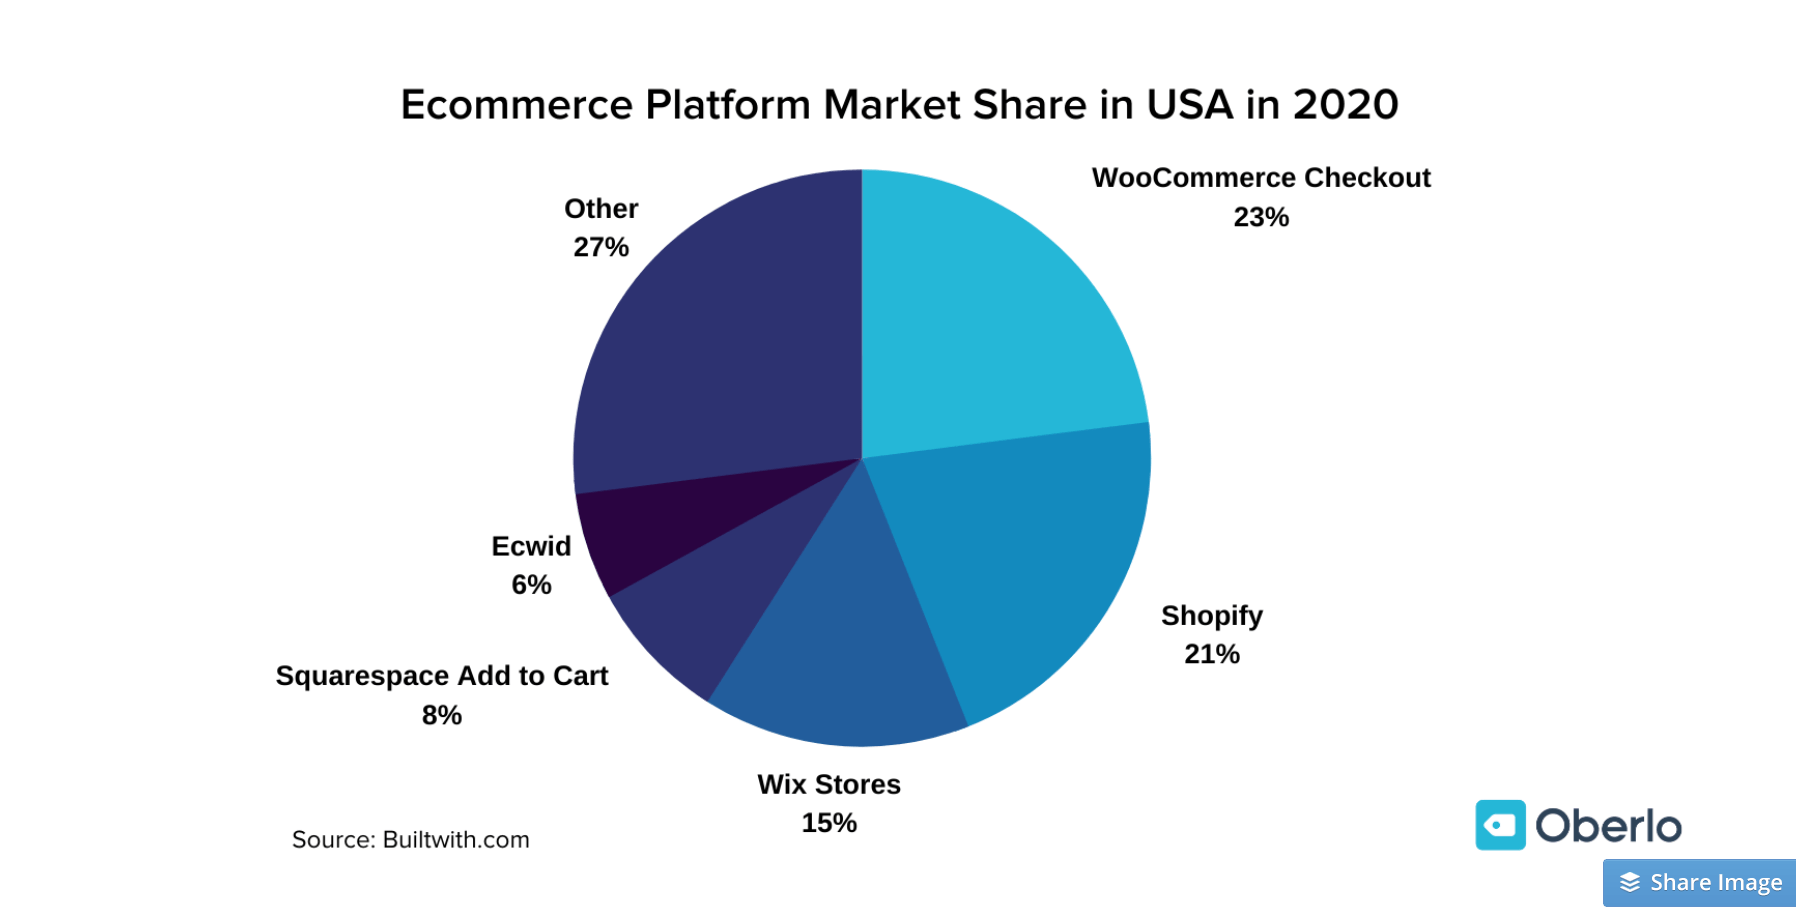 eCommerce Platforms Market Share